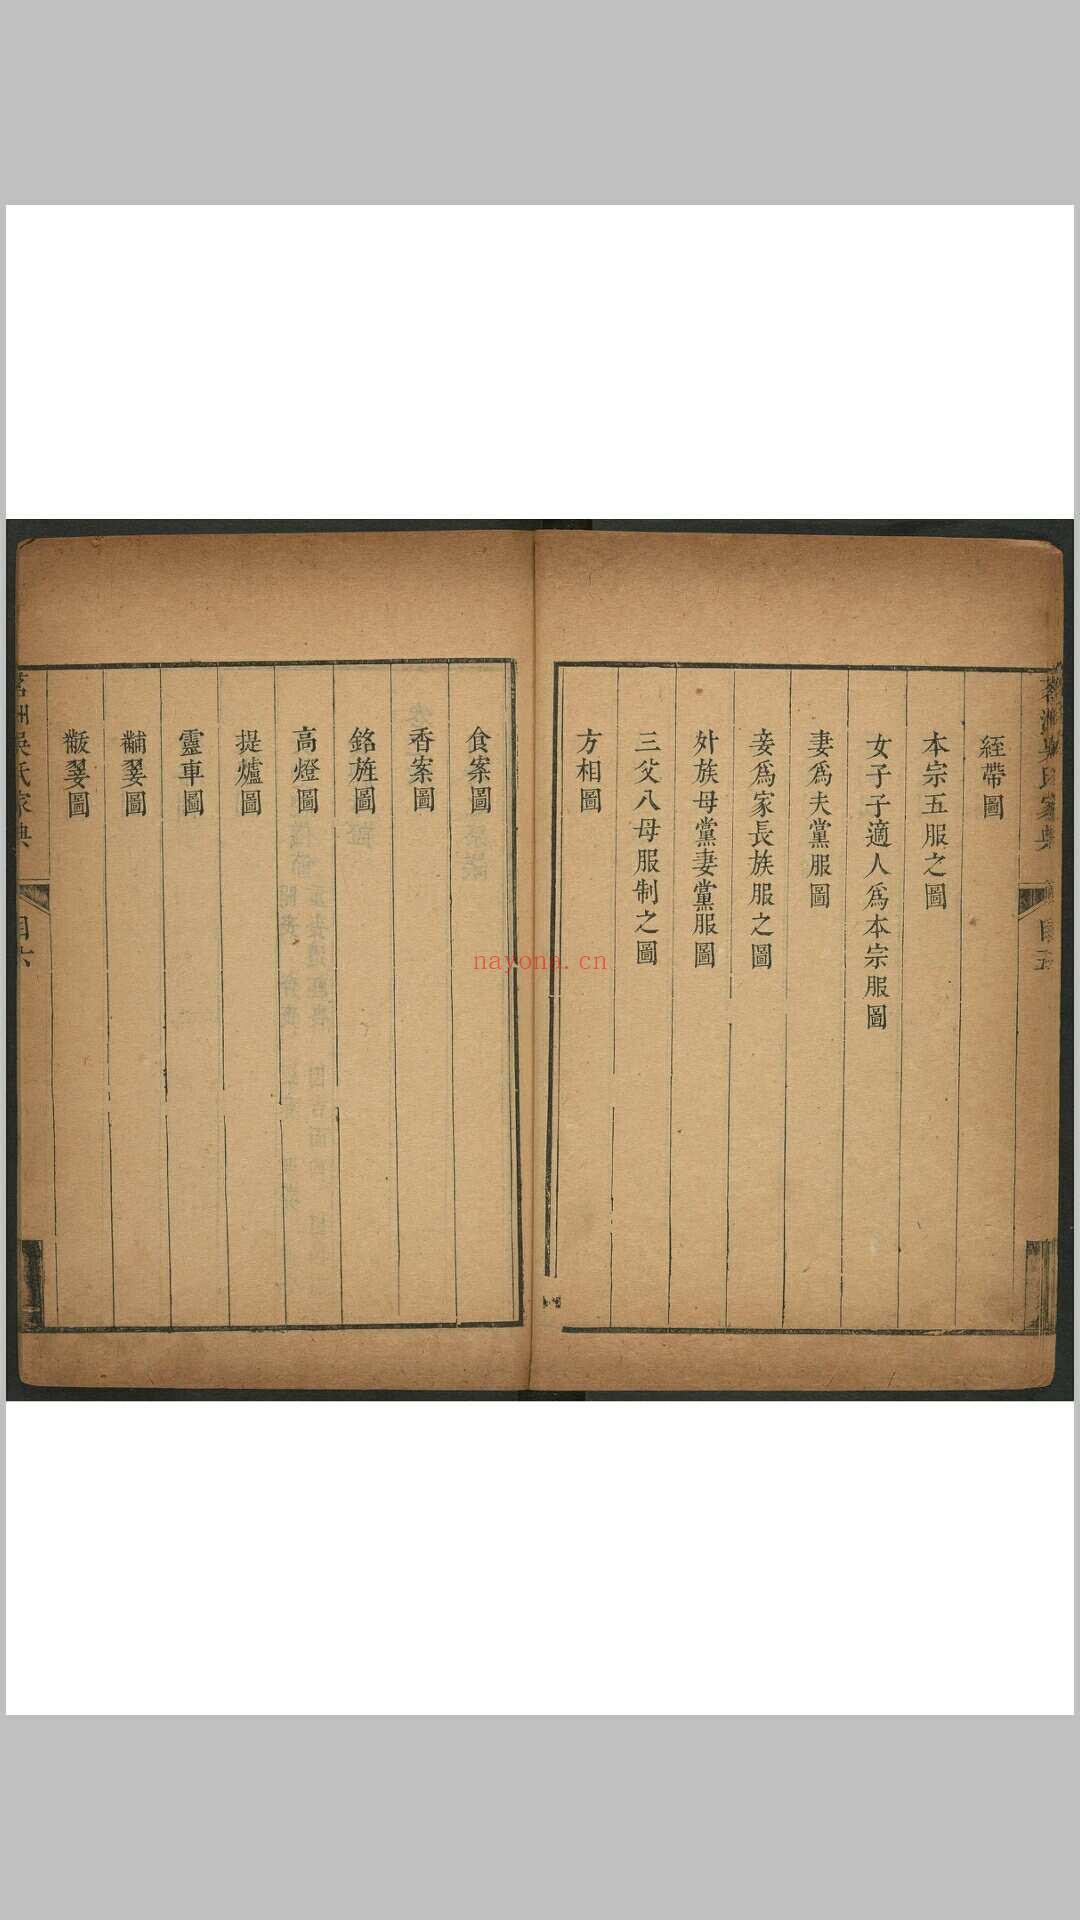 茗洲吴氏家典 八卷. 紫阳书院, 清雍正13年